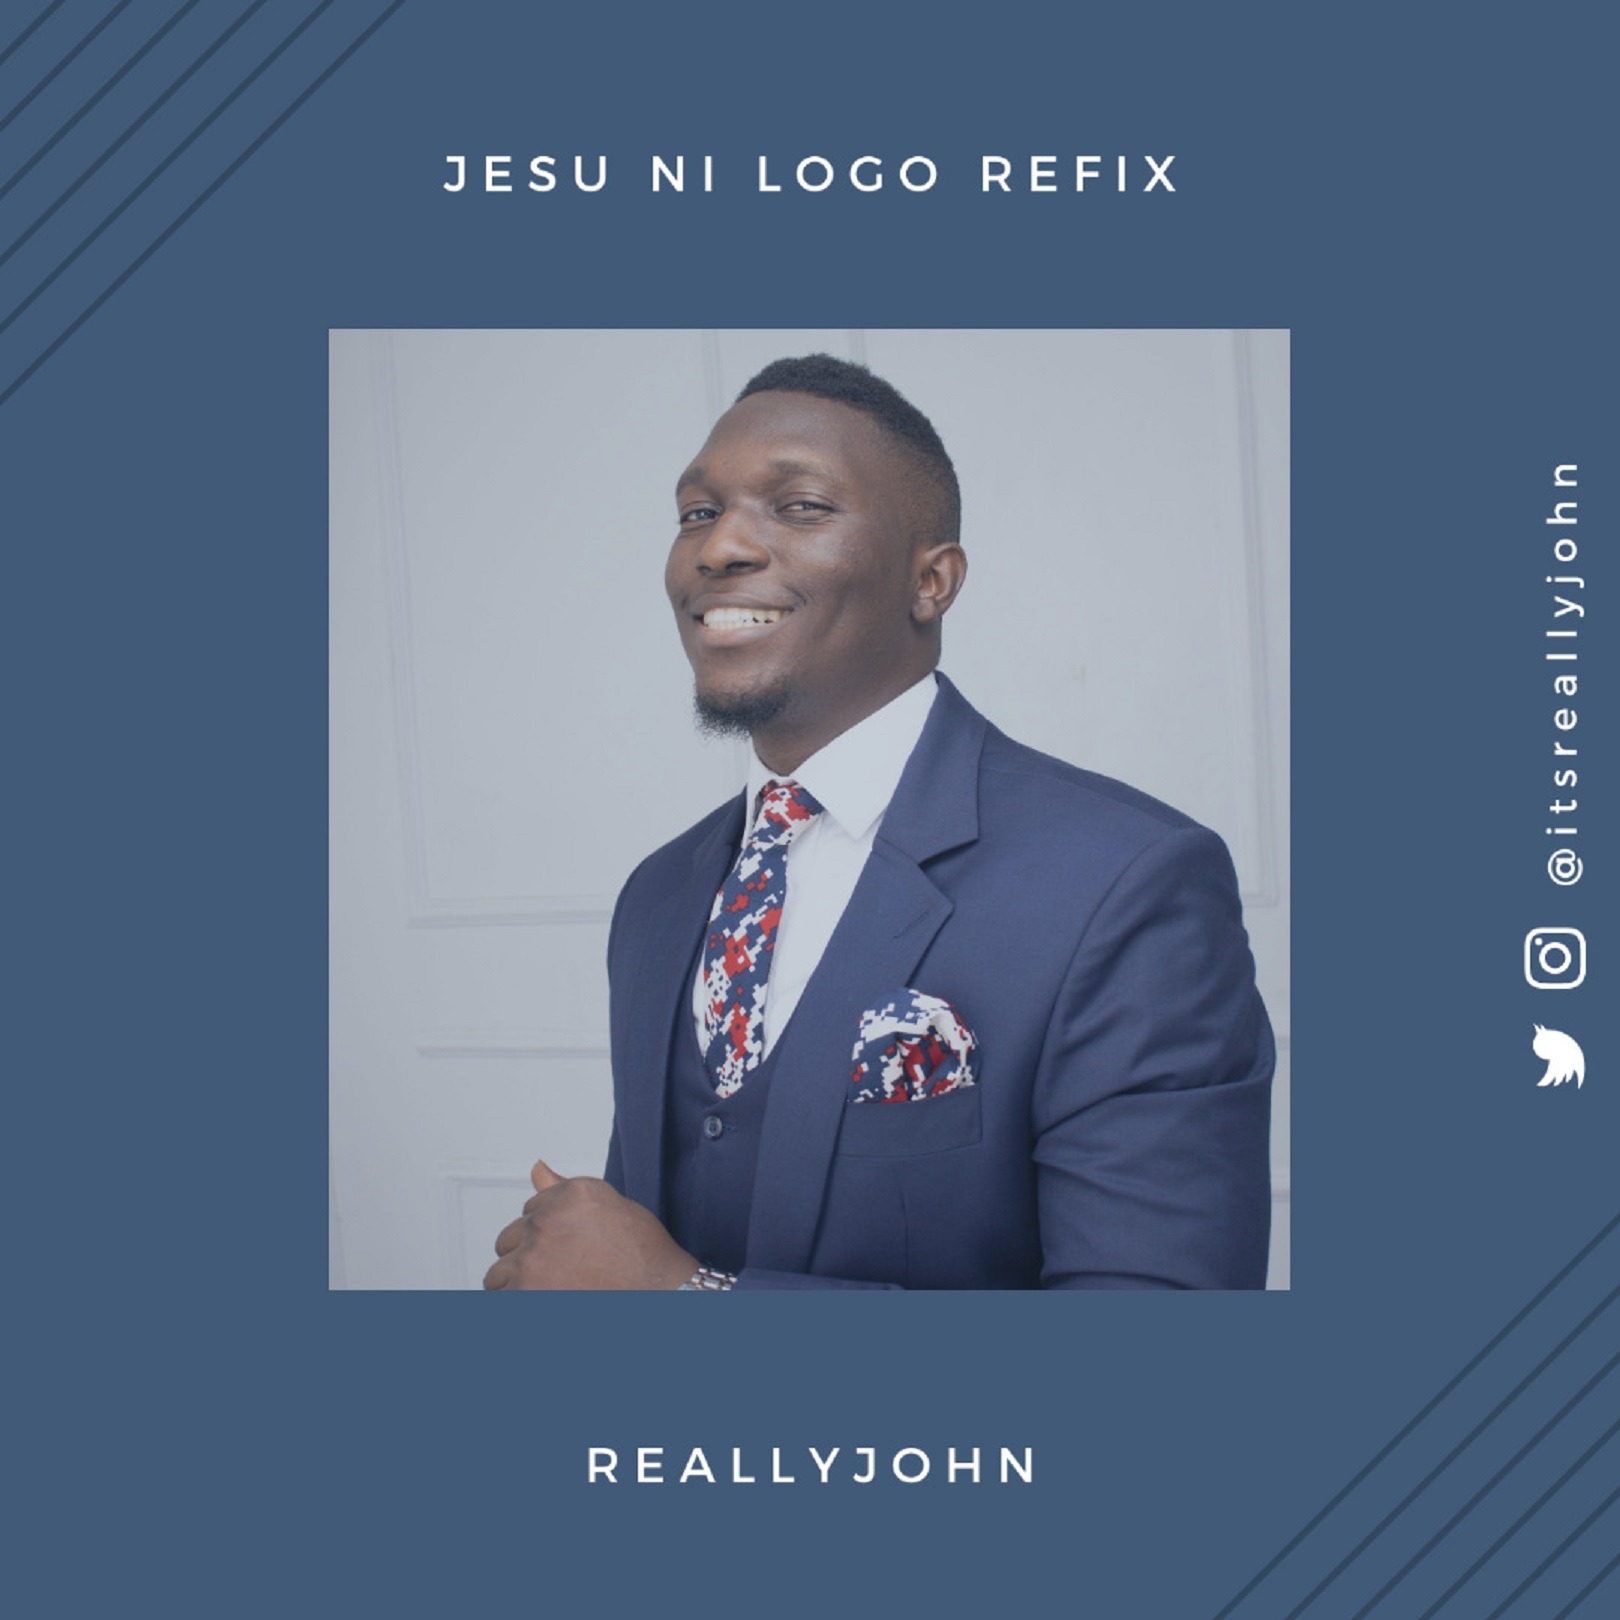 Reallyjohn Jesu Ni Logo (refix)